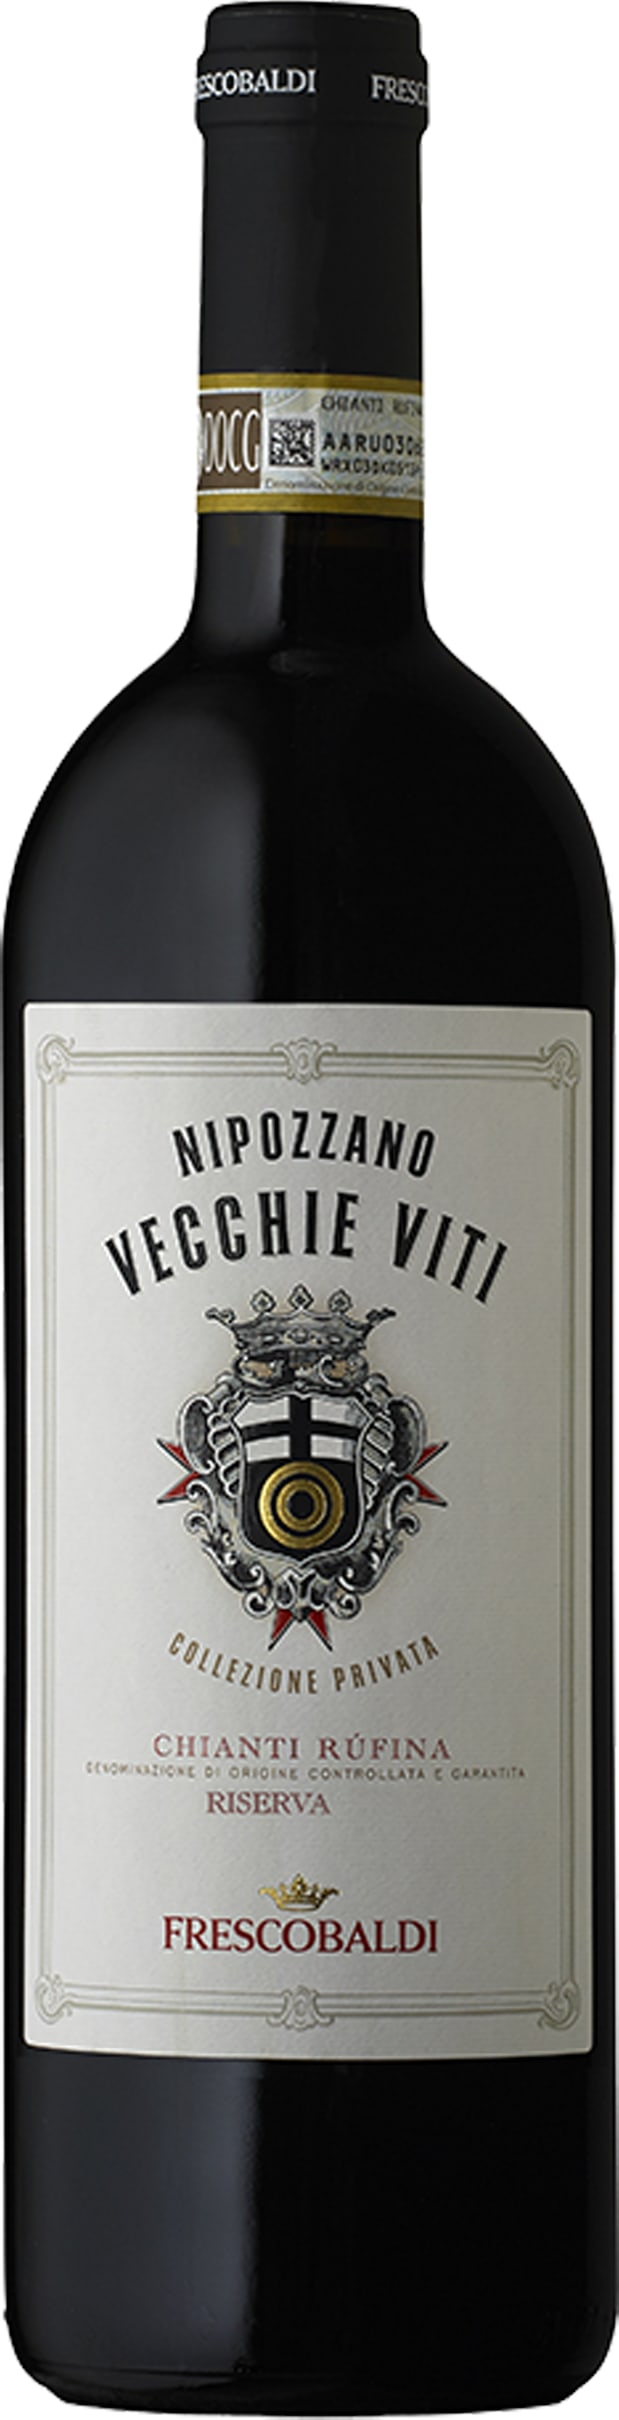 Nipozzano Vecchie Viti 16 Frescobaldi 150cl - Buy Frescobaldi Wines from GREAT WINES DIRECT wine shop